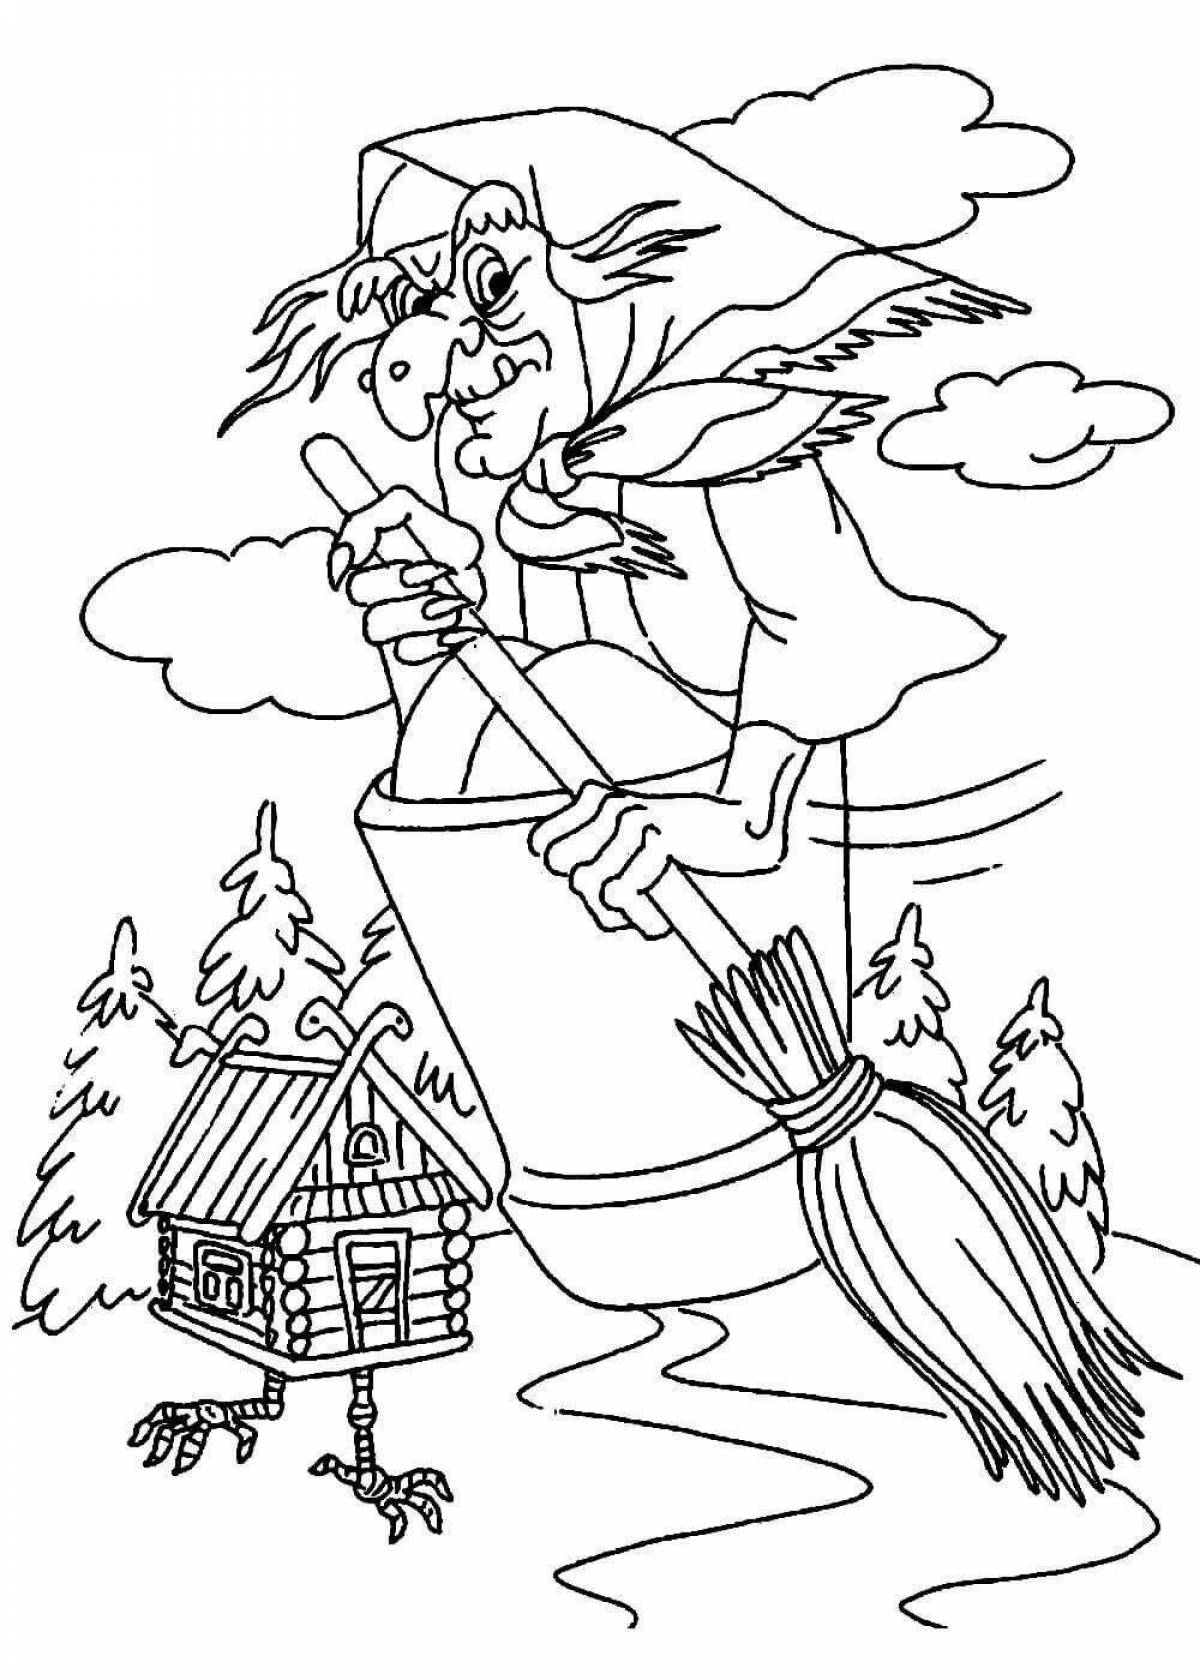 Иллюстрации к сказкам раскраски. Раскраска баба Яга и избушка на курьих ножках. Сказка баба Яга раскраска для детей. Избушка бабы яги раскраска. Раскраска баба Яга для детей.